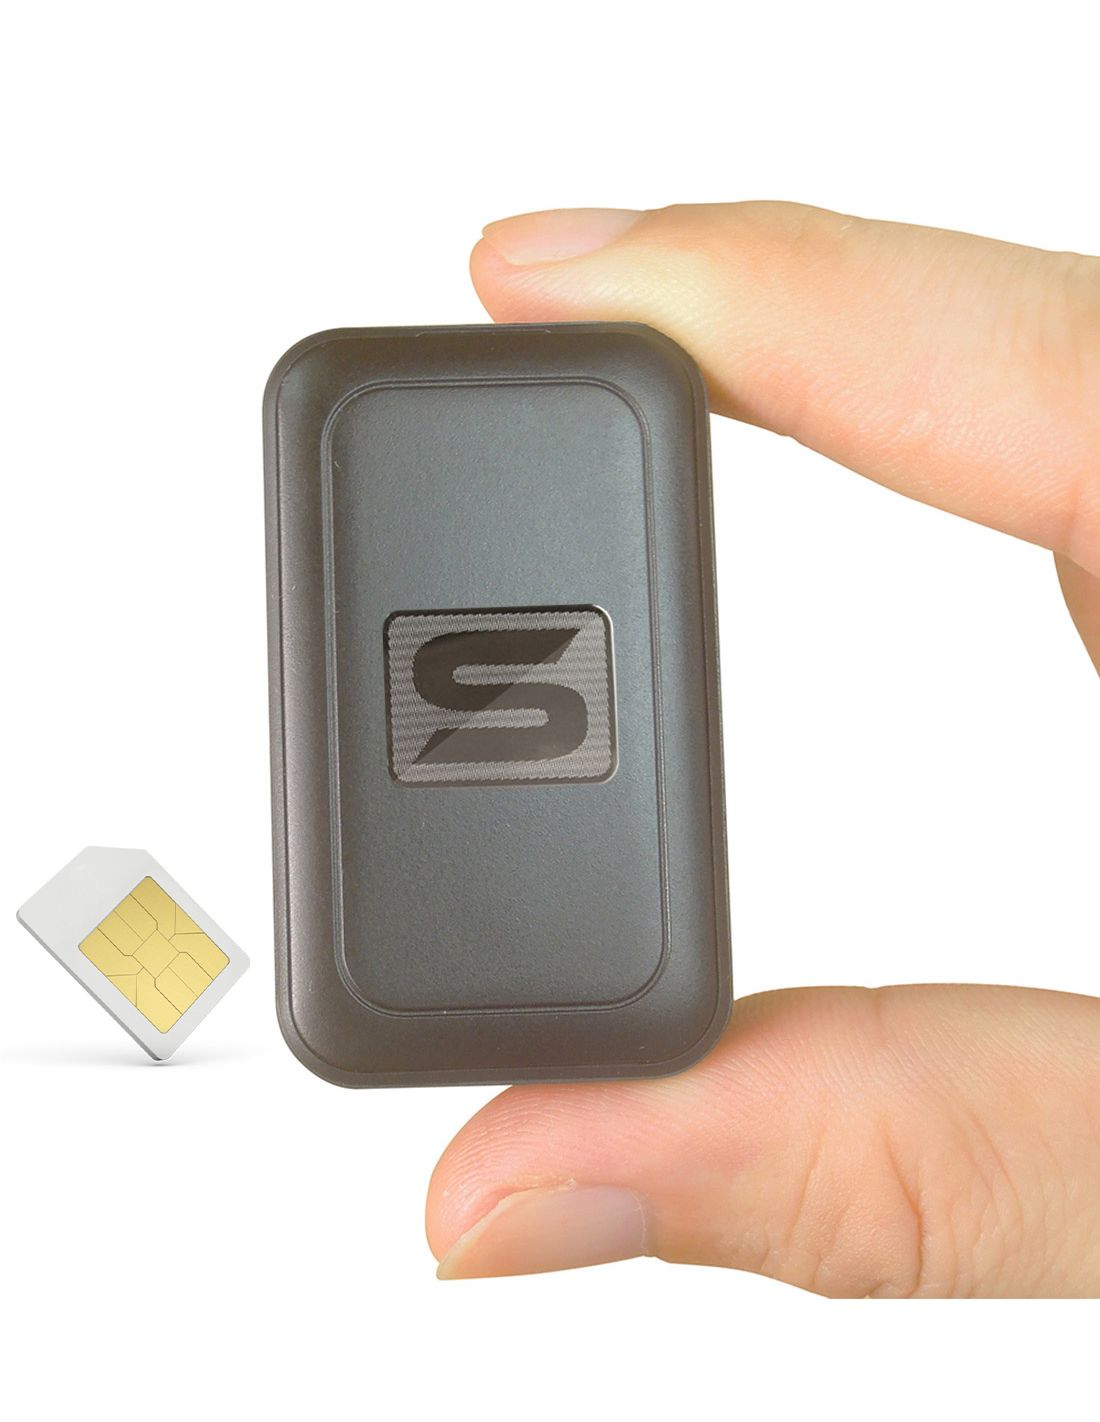 Découvrir le meilleur micro espion GSM pour vos besoins - Bedacamstore